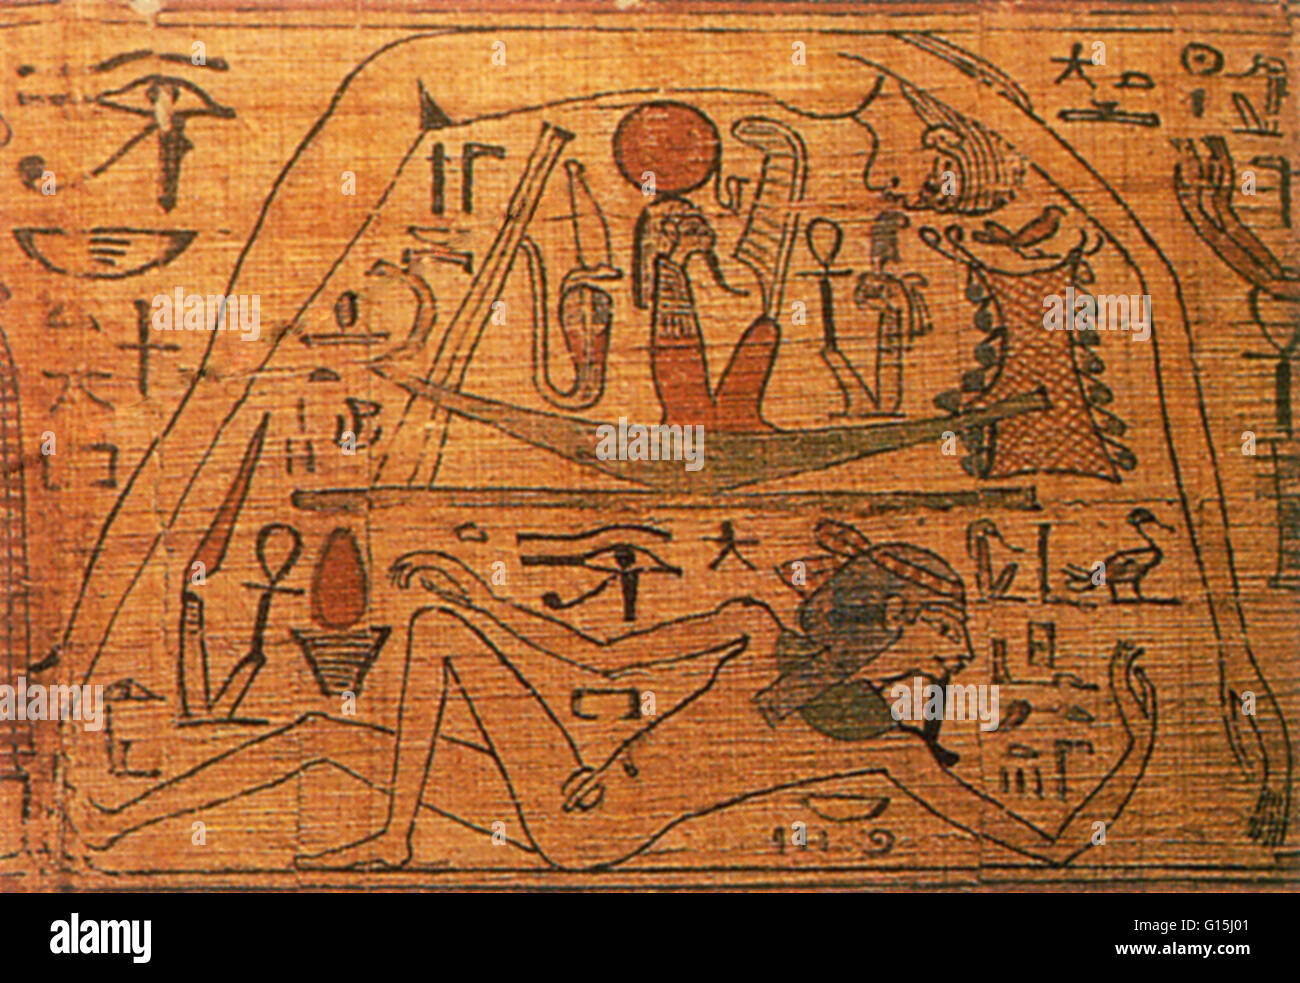 Alten Ägypter glaubten, dass die Erde, personifiziert durch den Gott Geb, mit seiner Schwester Mutter, den Himmel gepaart, um die Sterne zu erstellen. Diese Schriftrolle zeigt ihre Überzeugung, die jeden Abend zu dem Sonnengott Ra von Nuss, verschluckt wurde wieder jeden Morgen geboren werden. Stockfoto